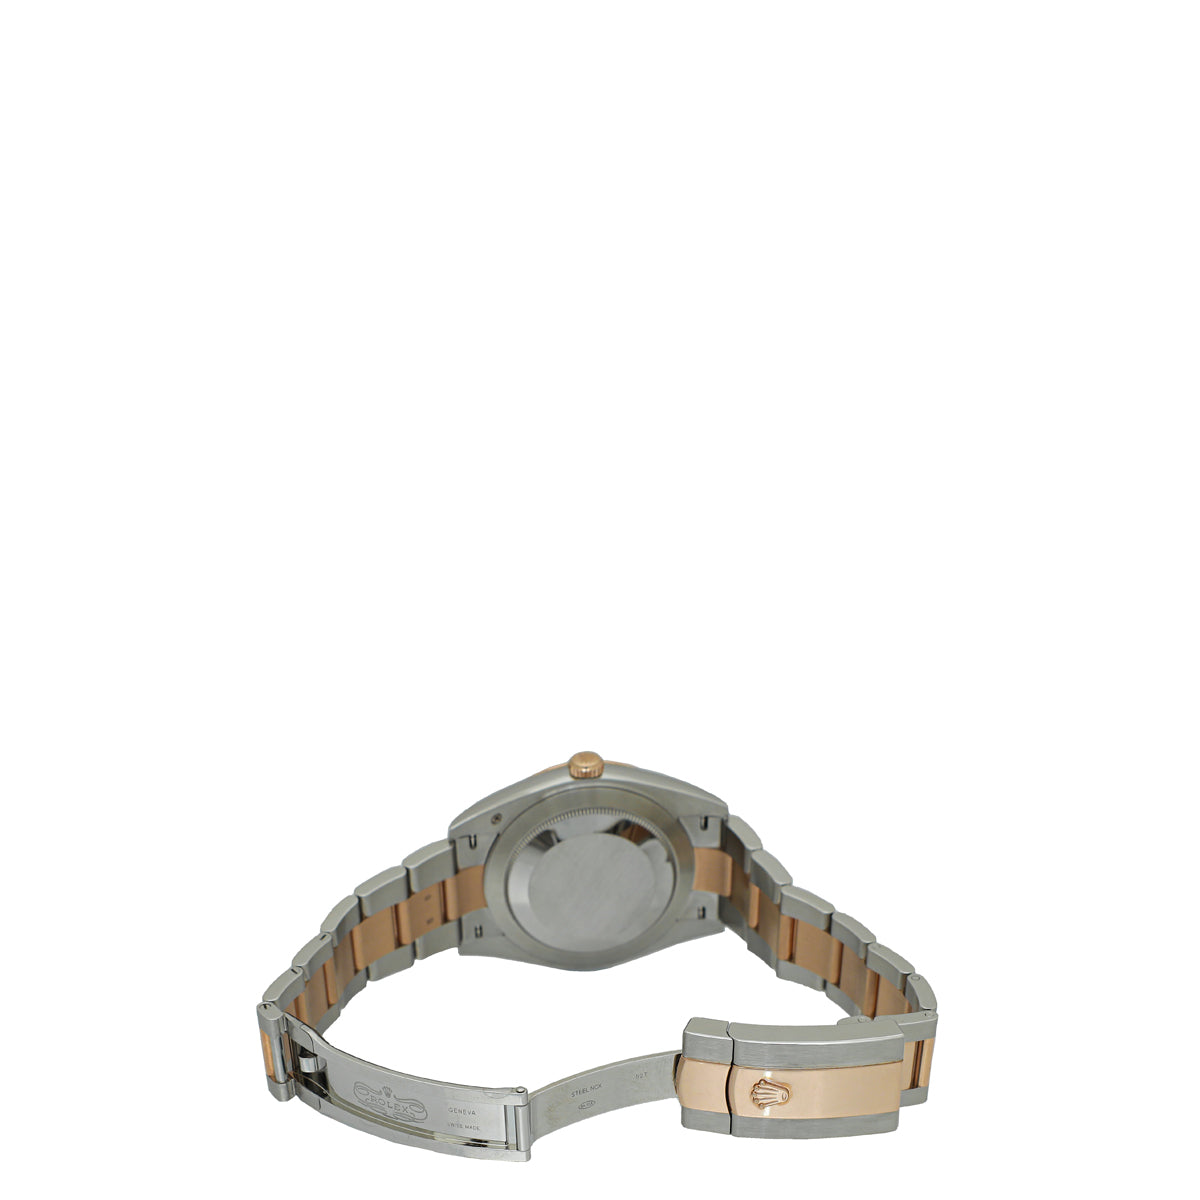 Rolex Oystersteel & Everose Gold Datejust 41mm Watch